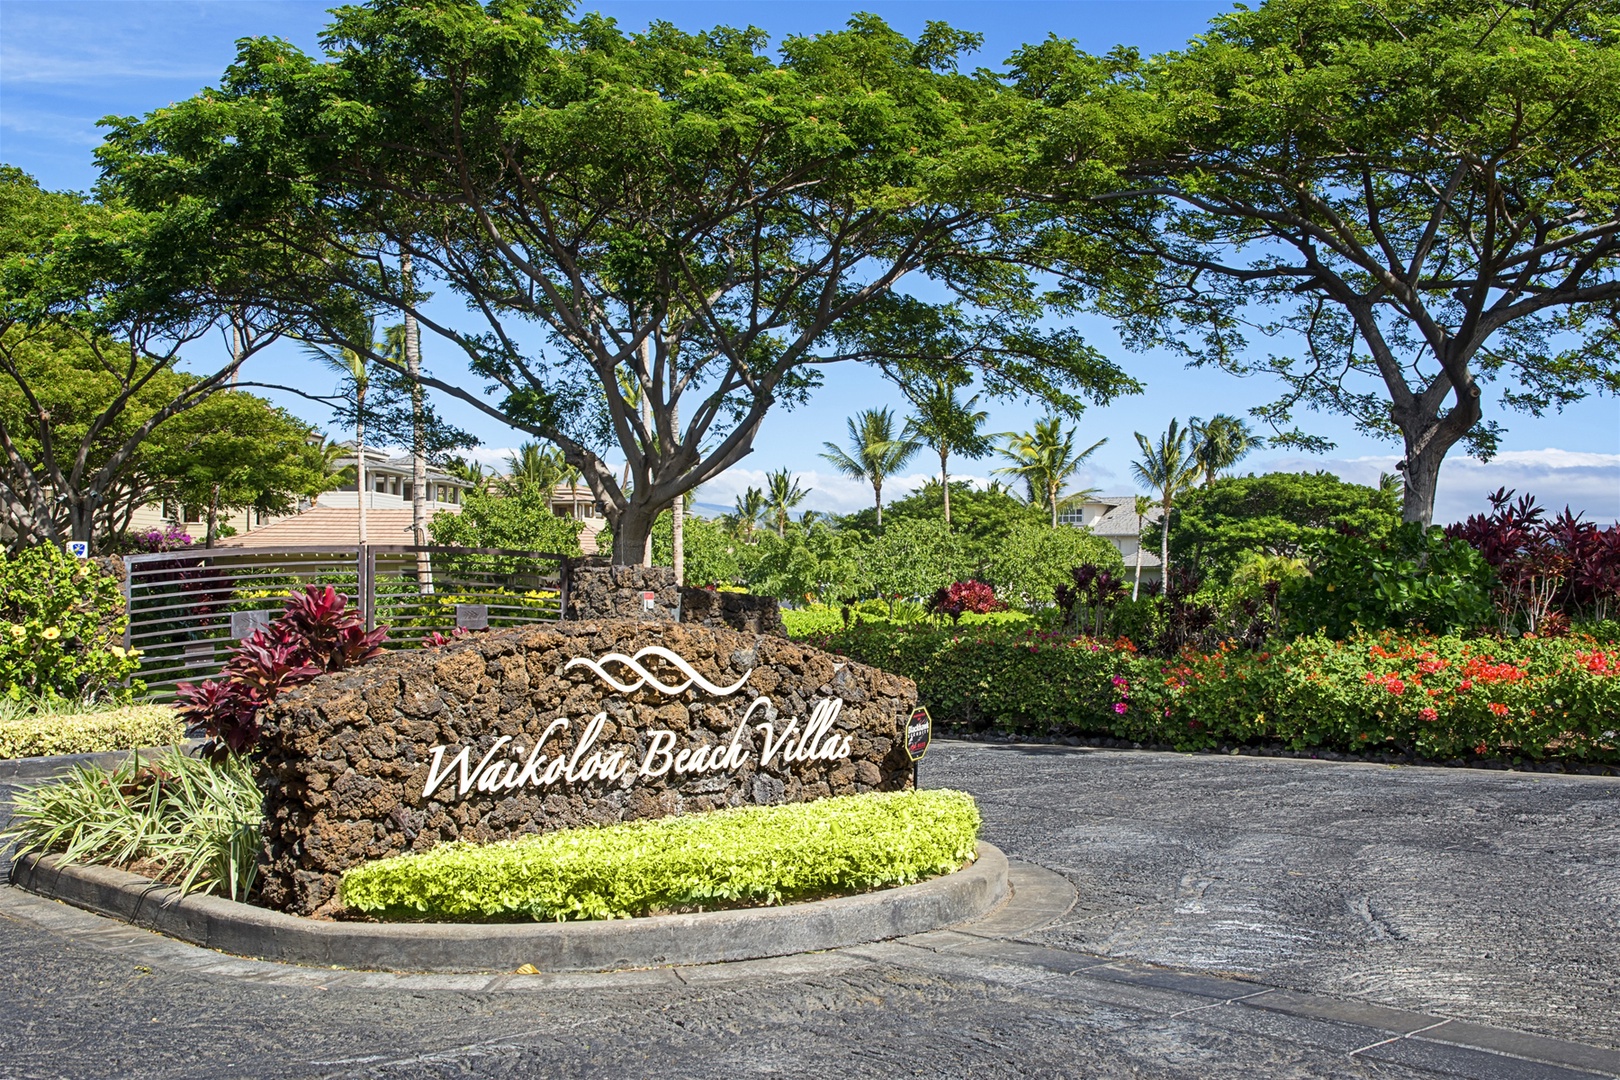 Waikoloa Beach Villas Entrance